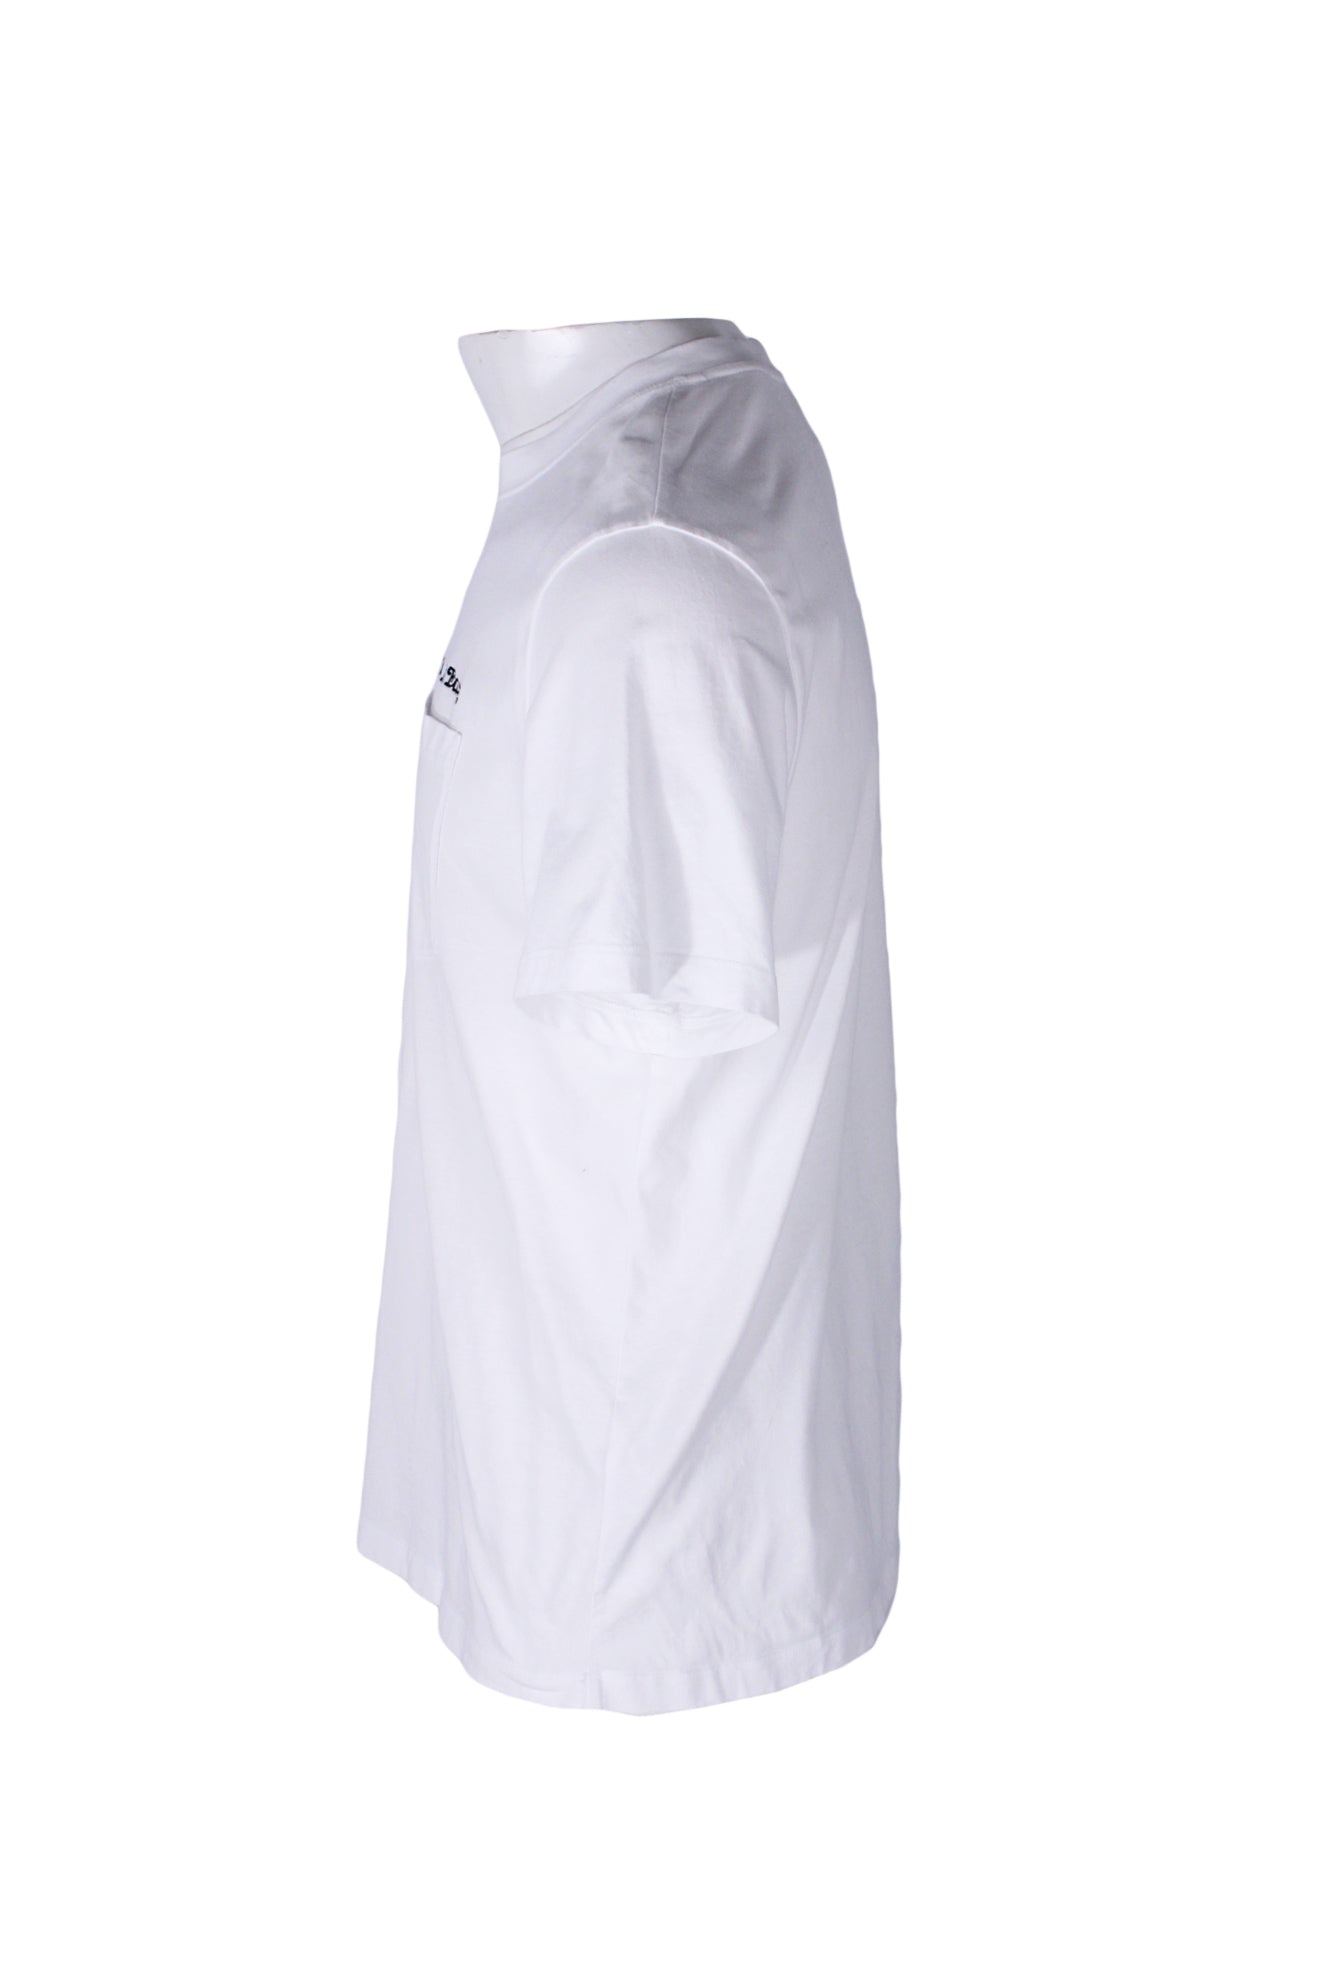 side angle sandro white short sleeve t-shirt on masculine mannequin torso.